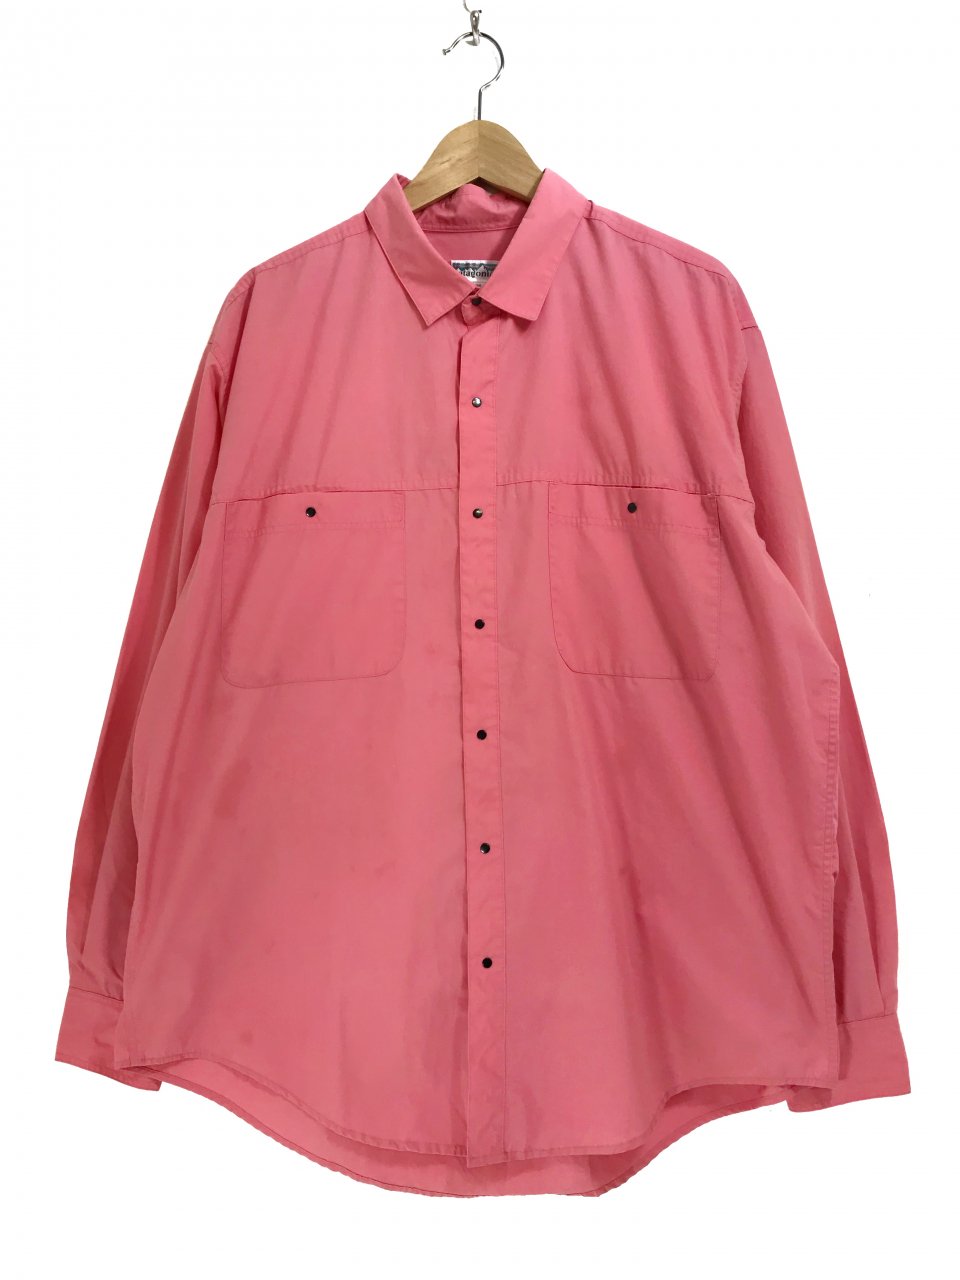 91年 patagonia Cotton-Polyester L/S Shirts ピンク L 90s パタゴニア ...